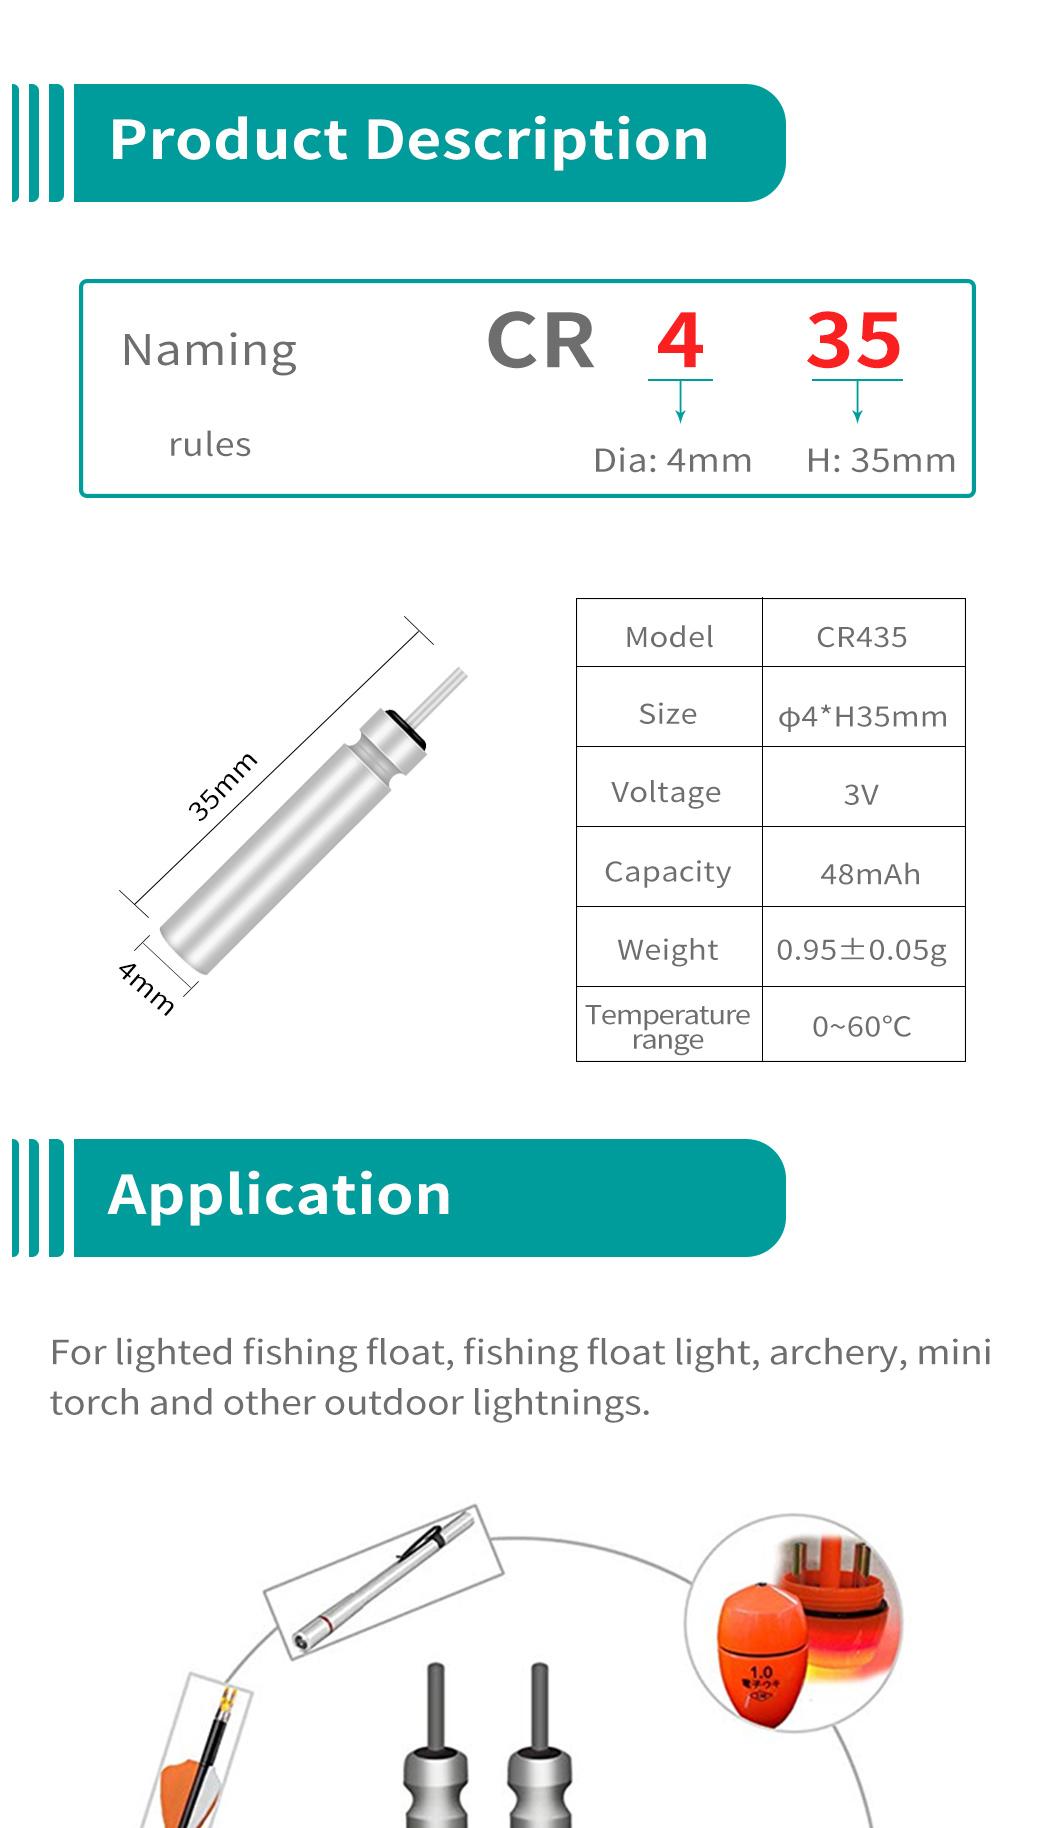 Dlyfull Hot Sale 3V Lithium Pin Cell Cr435 for Fishing Float